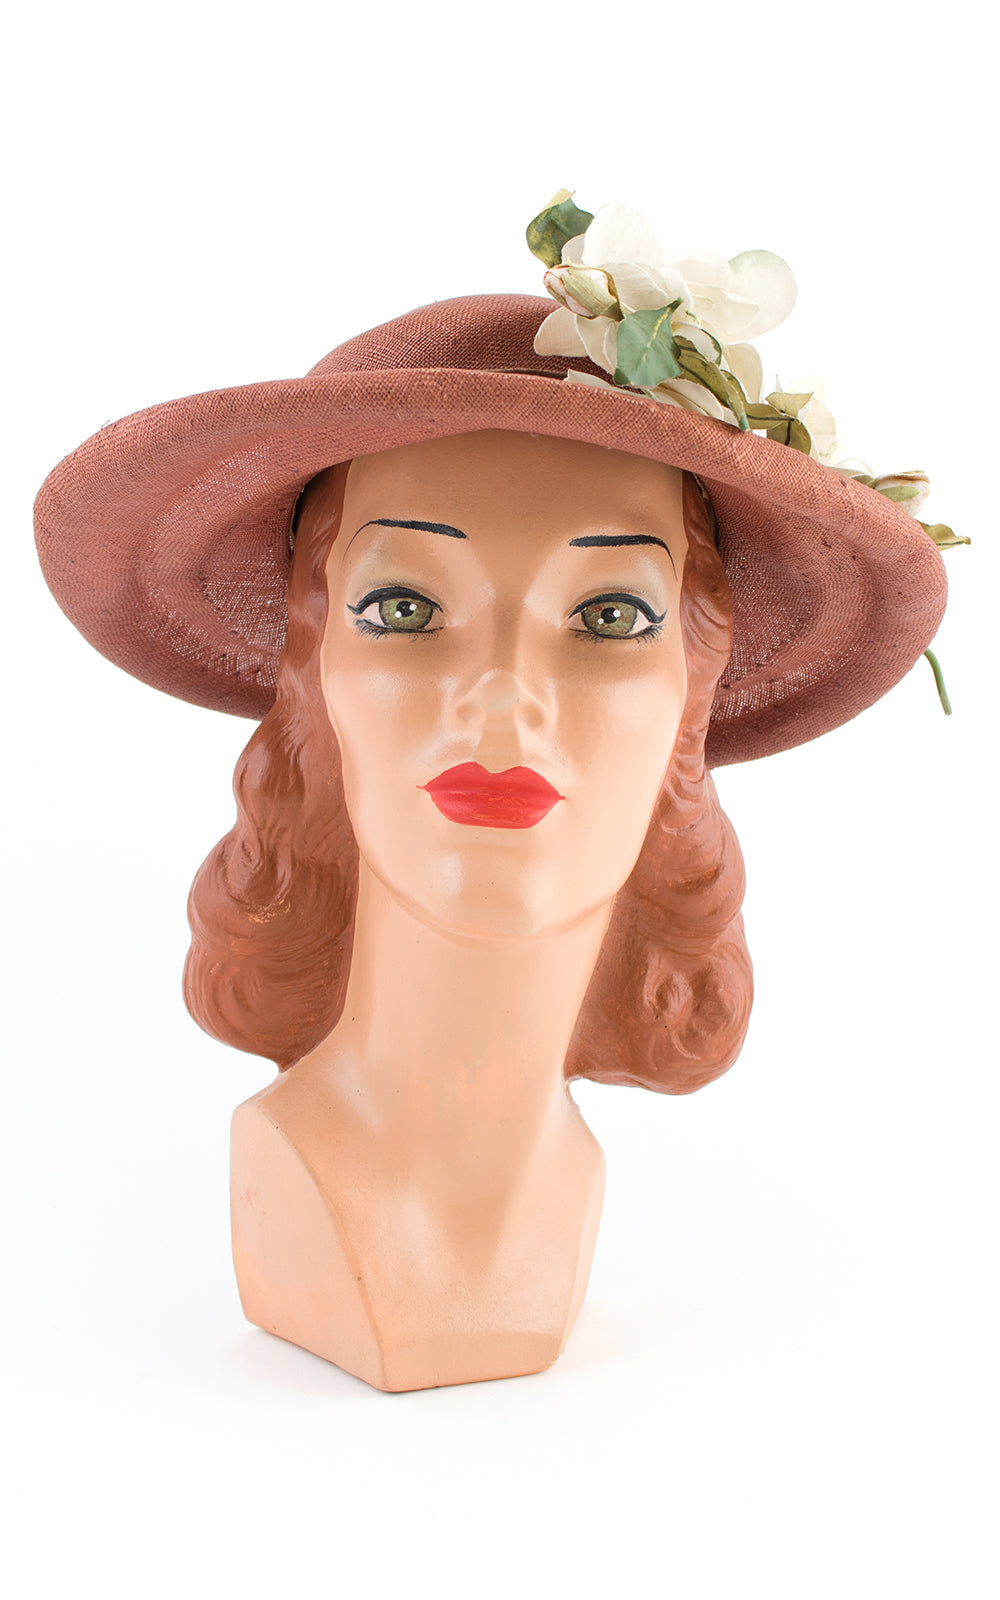 Vintage Straw Cloche Hat With Flower, Vintage Hat, 1950s Hat